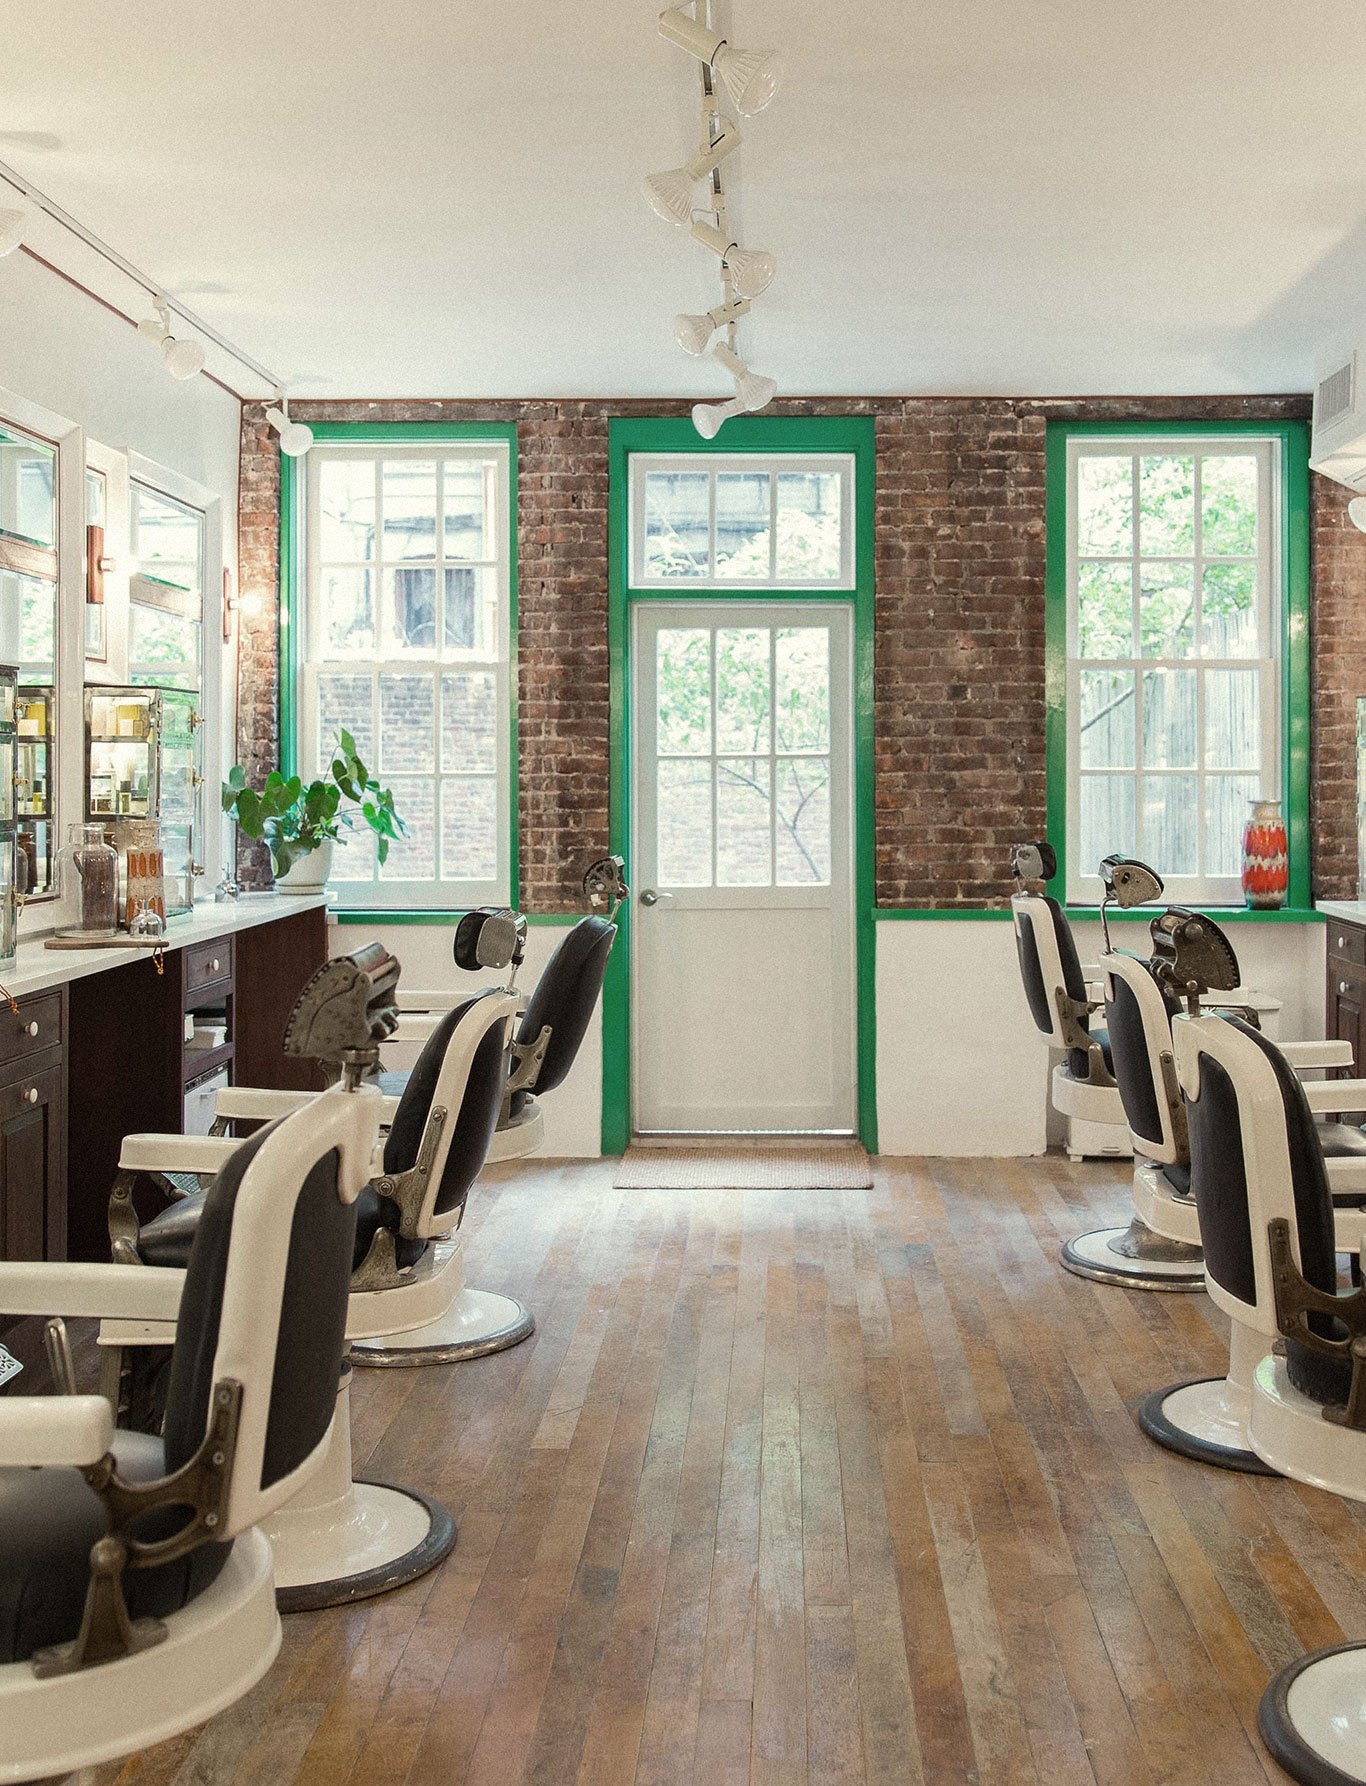 Interior of Fellow barbershop in Williamsburg, Brooklyn, branding by RoAndCo  